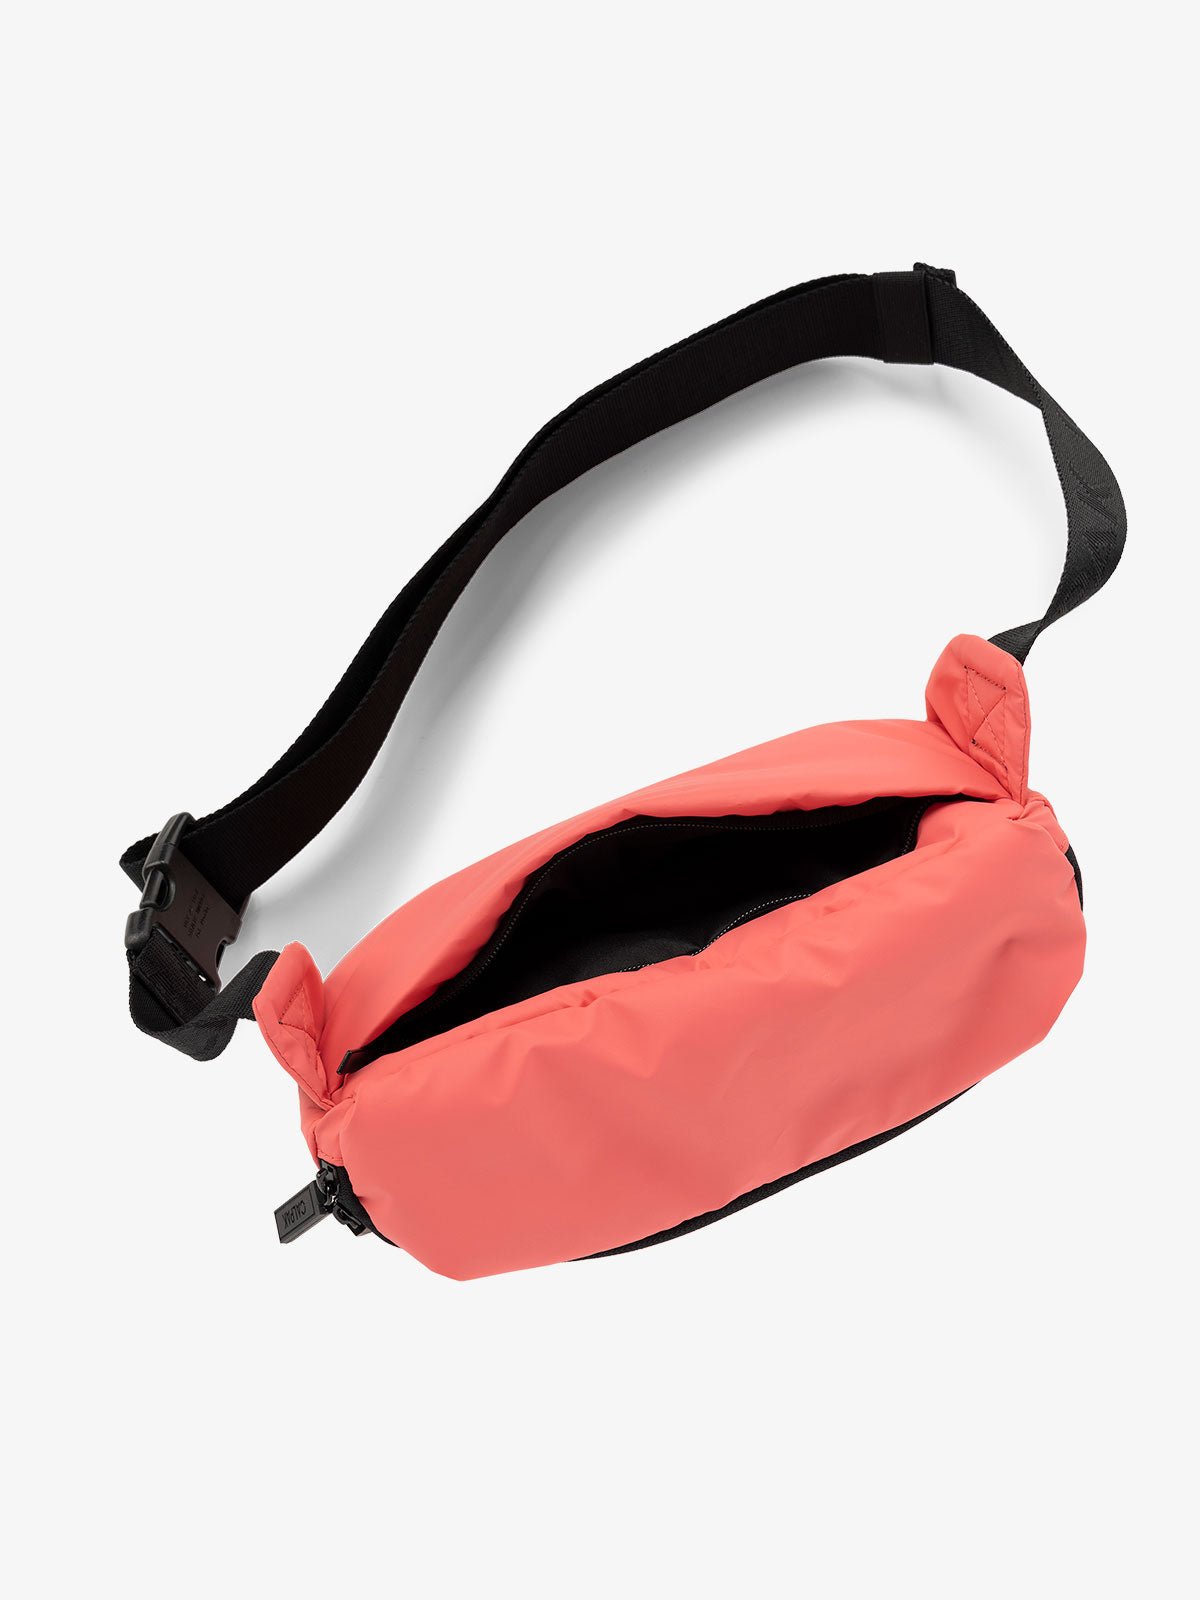 CALPAK Luka Belt Bag with adjustable strap and hidden back pocket in watermelon pink